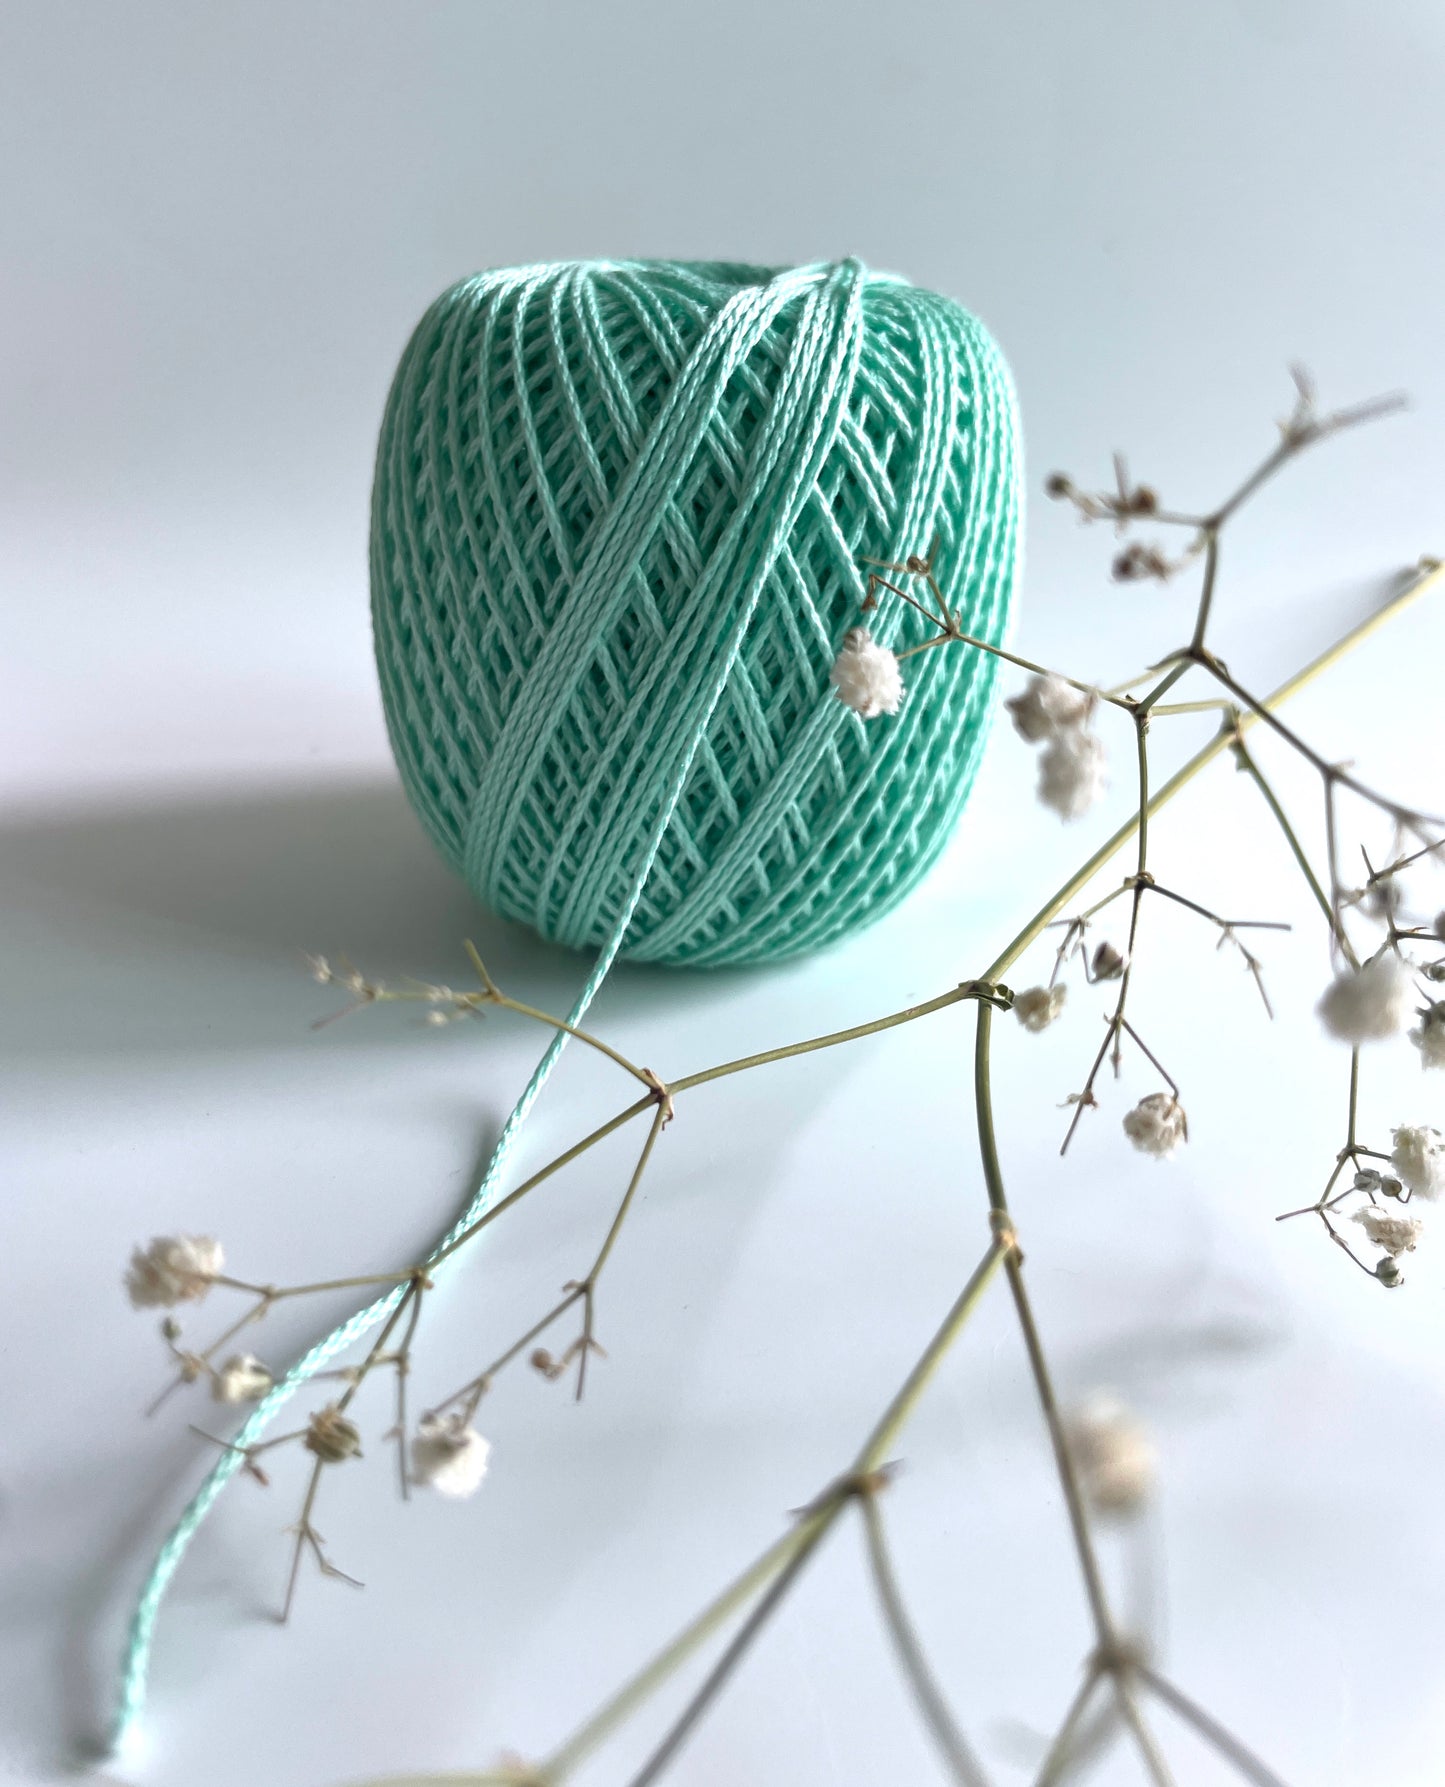 Knitting/Crochet Threads - Mint Green